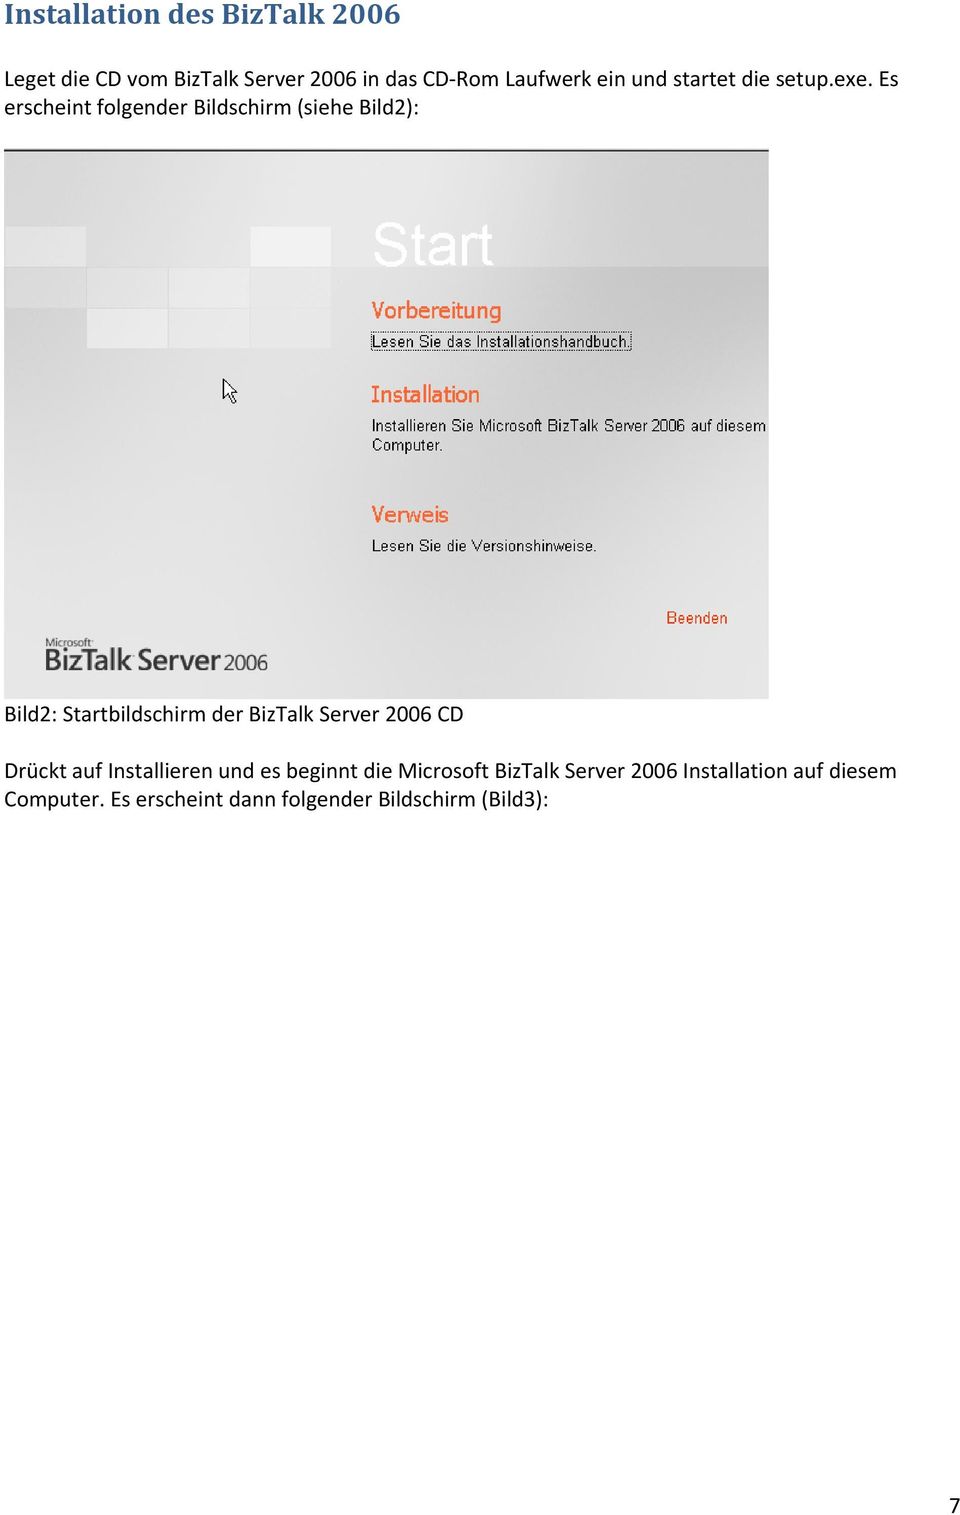 Es erscheint folgender Bildschirm (siehe Bild2): Bild2: Startbildschirm der BizTalk Server